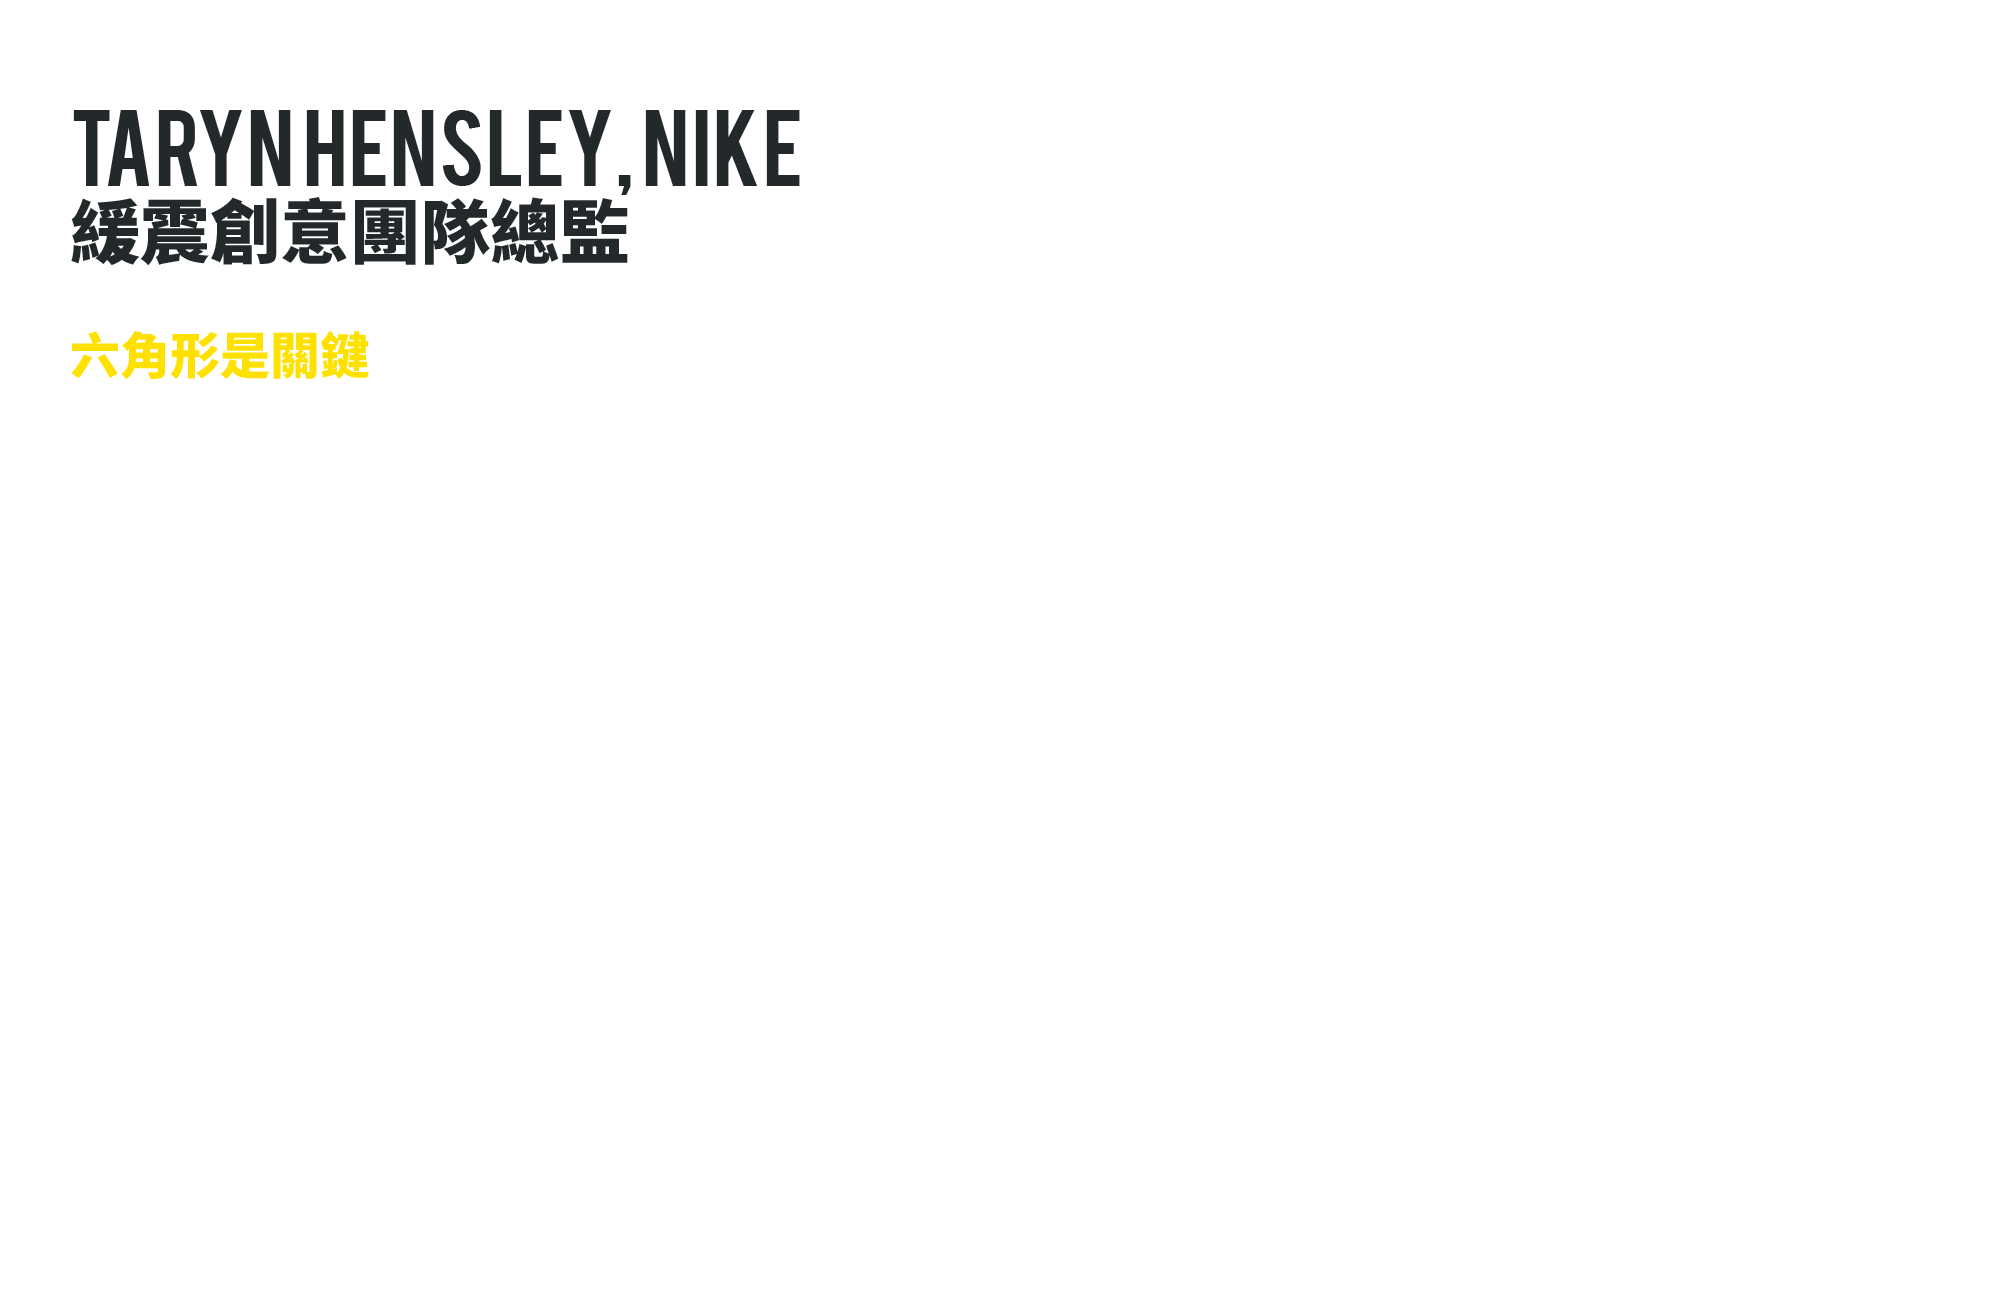 Taryn Hensley, Nike 緩震創意團隊總監 在 Nike 工作了十八年的 Taryn Hensley 可以說見證著氣墊科技的演進，在加入 Nike 之前她在製造 Nike Air 氣墊的 Tetra Plastic 服務，如今轉而成為領導團隊開創新世代氣墊的創意團隊總監，可以說是這次 Nike LEBRON 12 避震科技的靈魂所在，在談及這款作品時，她也難掩興奮與驕傲的神情地提到了「LeBron 是一位不可思議的強壯球員，對於新的避震他希望有同樣敏捷的回彈與貼地性，卻要有更為靈活的彎曲度來完成他的快速切入及強力上籃」，這個目標讓團隊嚴陣以待，因為人體腳掌是一個複雜的曲面，不同的的區域在不同的狀況下需要的避震及彎曲也不同，幾經測試後 Hensley 發覺到「六角形是關鍵」，Nike 打造出不同大小、不同高度的 Zoom Air Pods 來反應這個需求，LEBRON 12 鞋款的中外底對 Taryn Hensley 來說更是這整個計畫的關鍵，「LEBRON 12 的氣墊設計展現了我們更進一步地掌握了人體腳掌壓力分布狀況，藉由區域化不同壓力反應，我們為此開發了一個中外底結構讓不同特性的 Zoom AIr 能在腳掌的各個角落發揮最適當的效能，如果我們只是像抹奶油般把中底塗上去，一切的功夫都白費了！ LEBRON 12 中外底之間以特別打造的加深溝槽緊密結合，創造出多方向性的爆發腳感。」